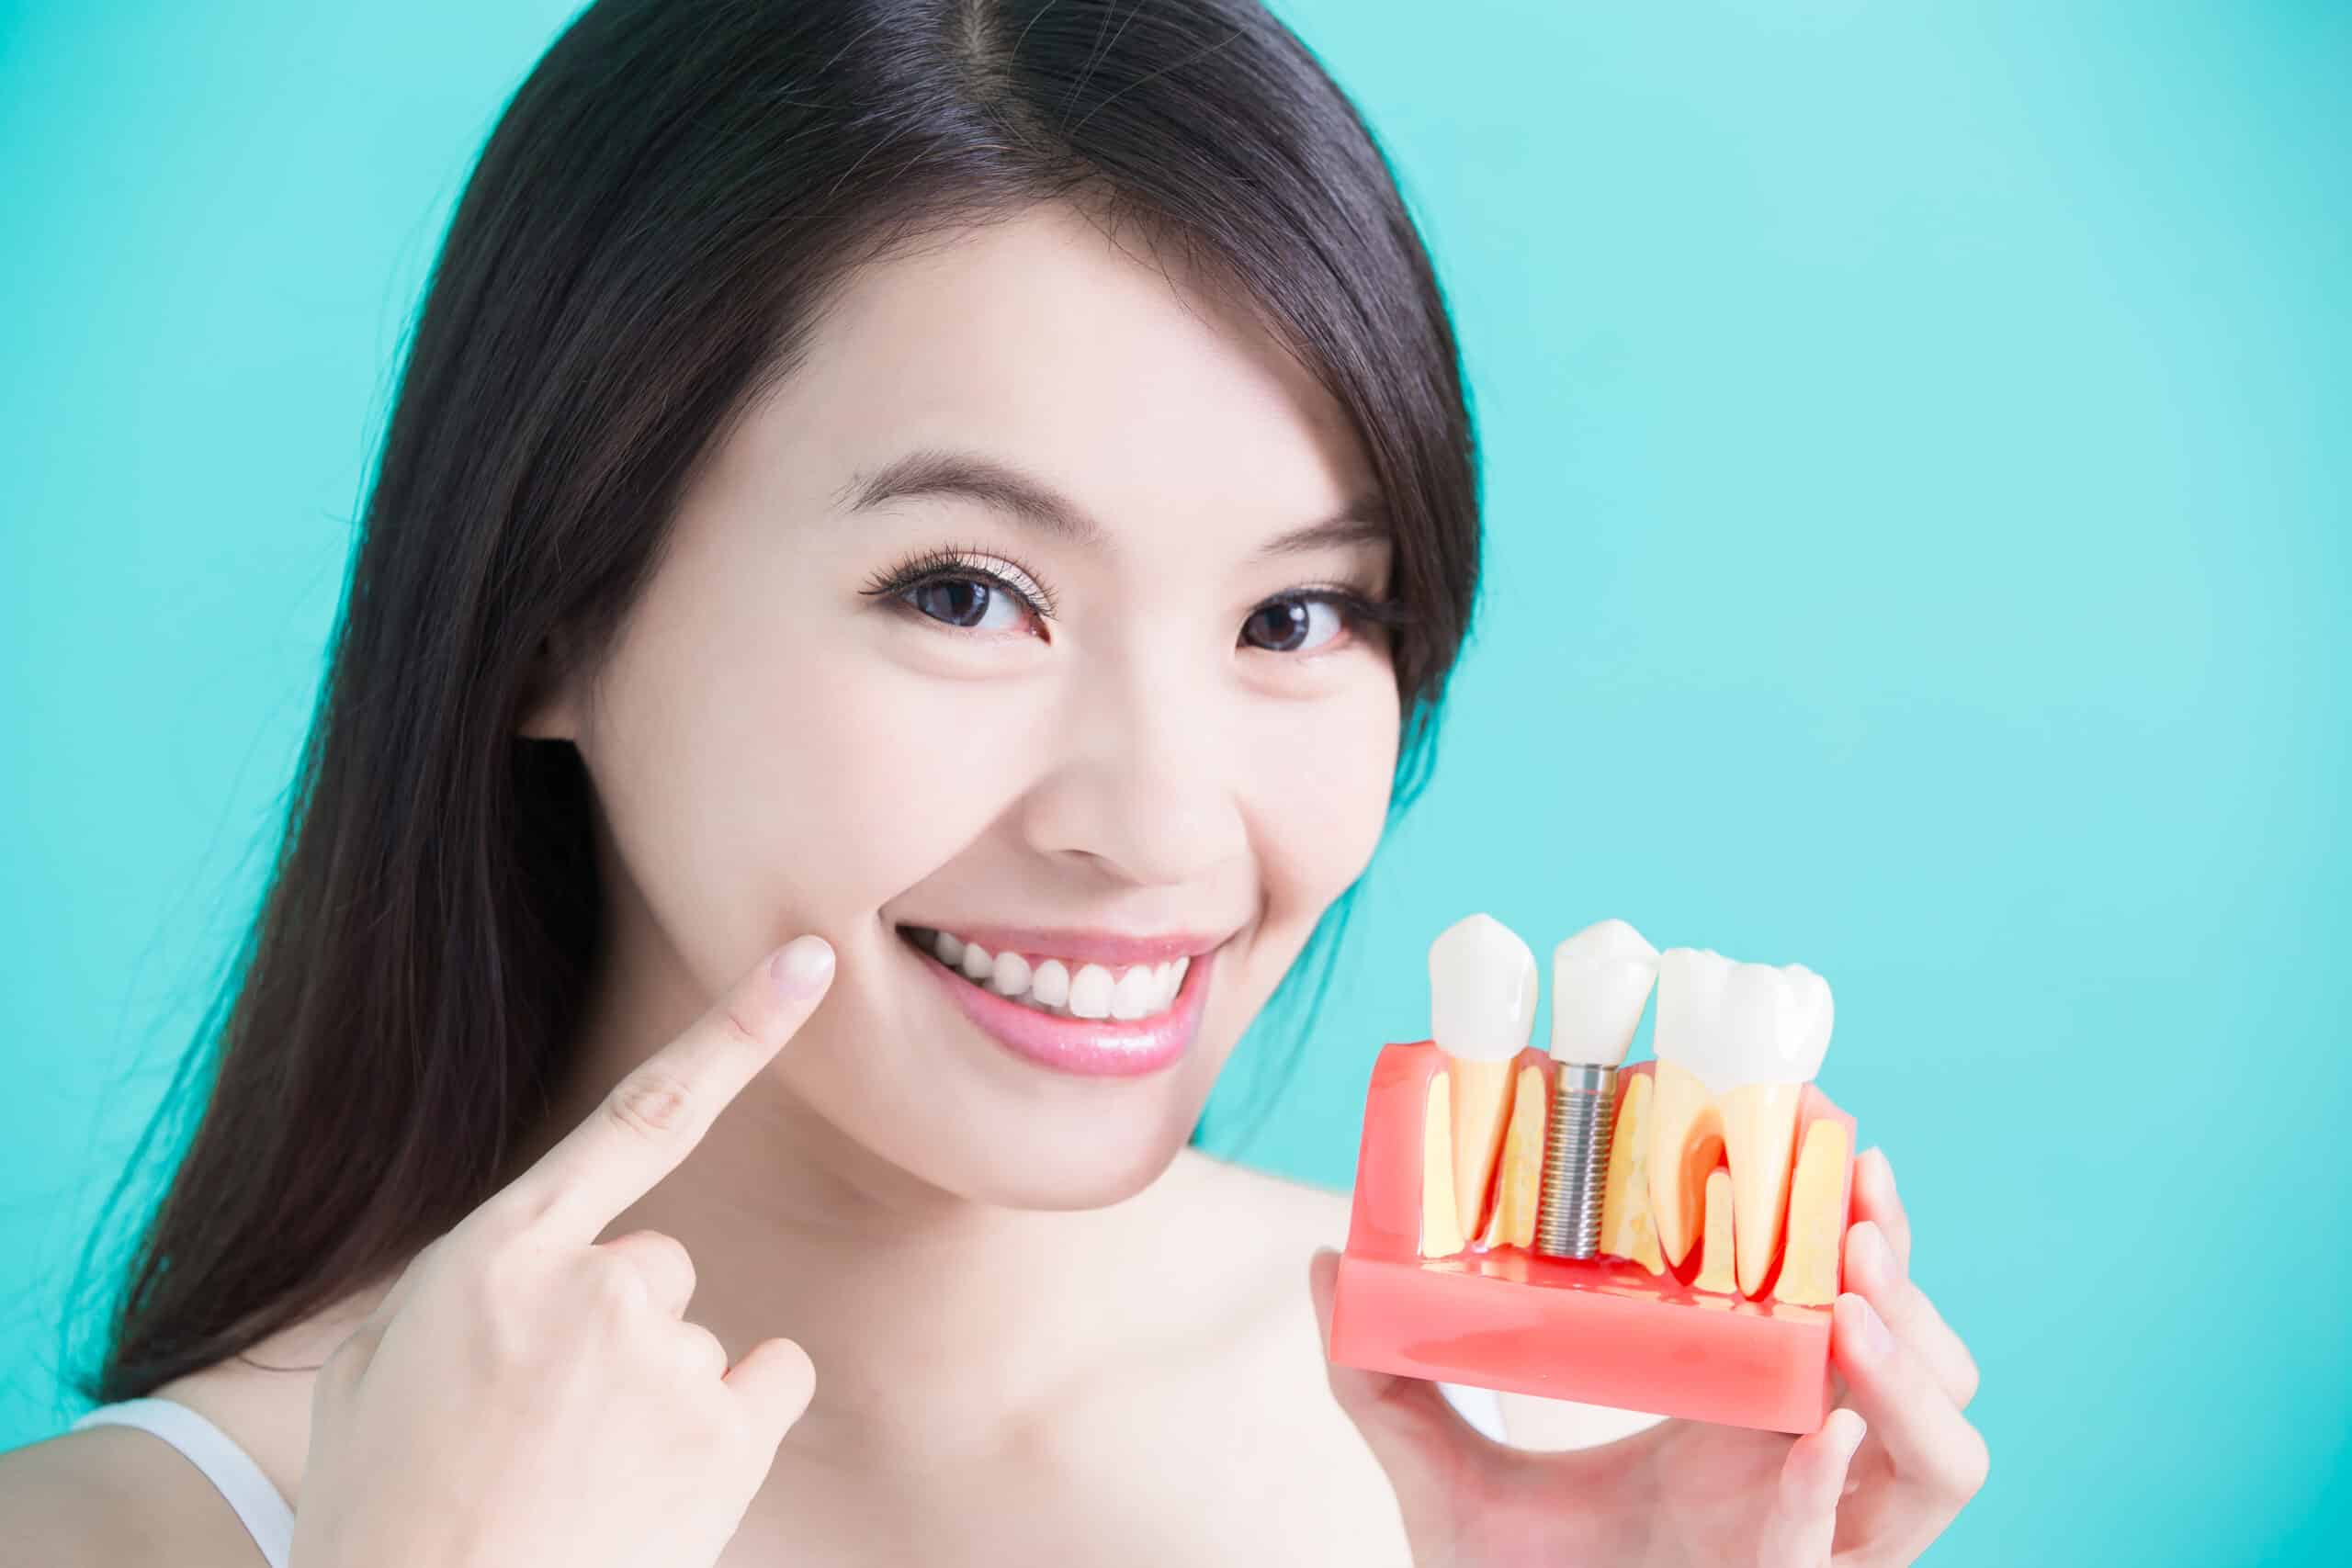 รากฟันเทียม (Dental Implant)